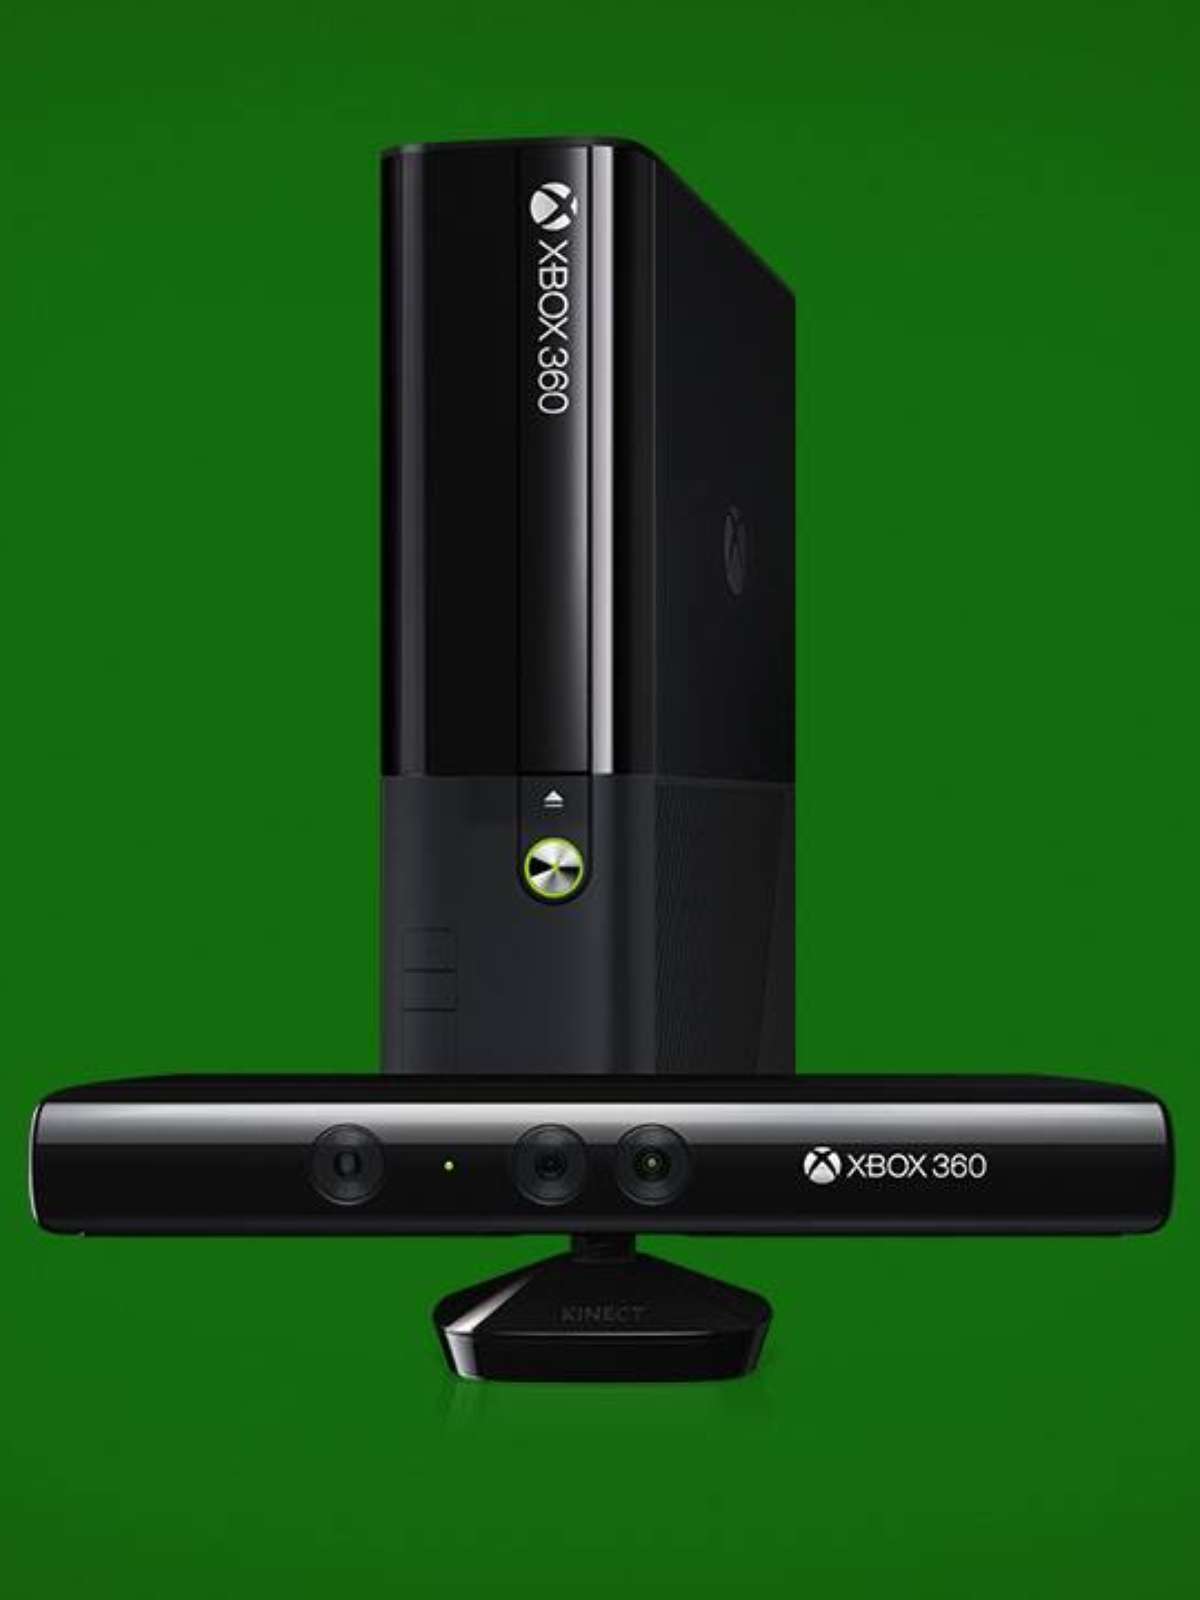 Fotos: Jogos essenciais do Xbox 360 - 15/05/2014 - UOL Start